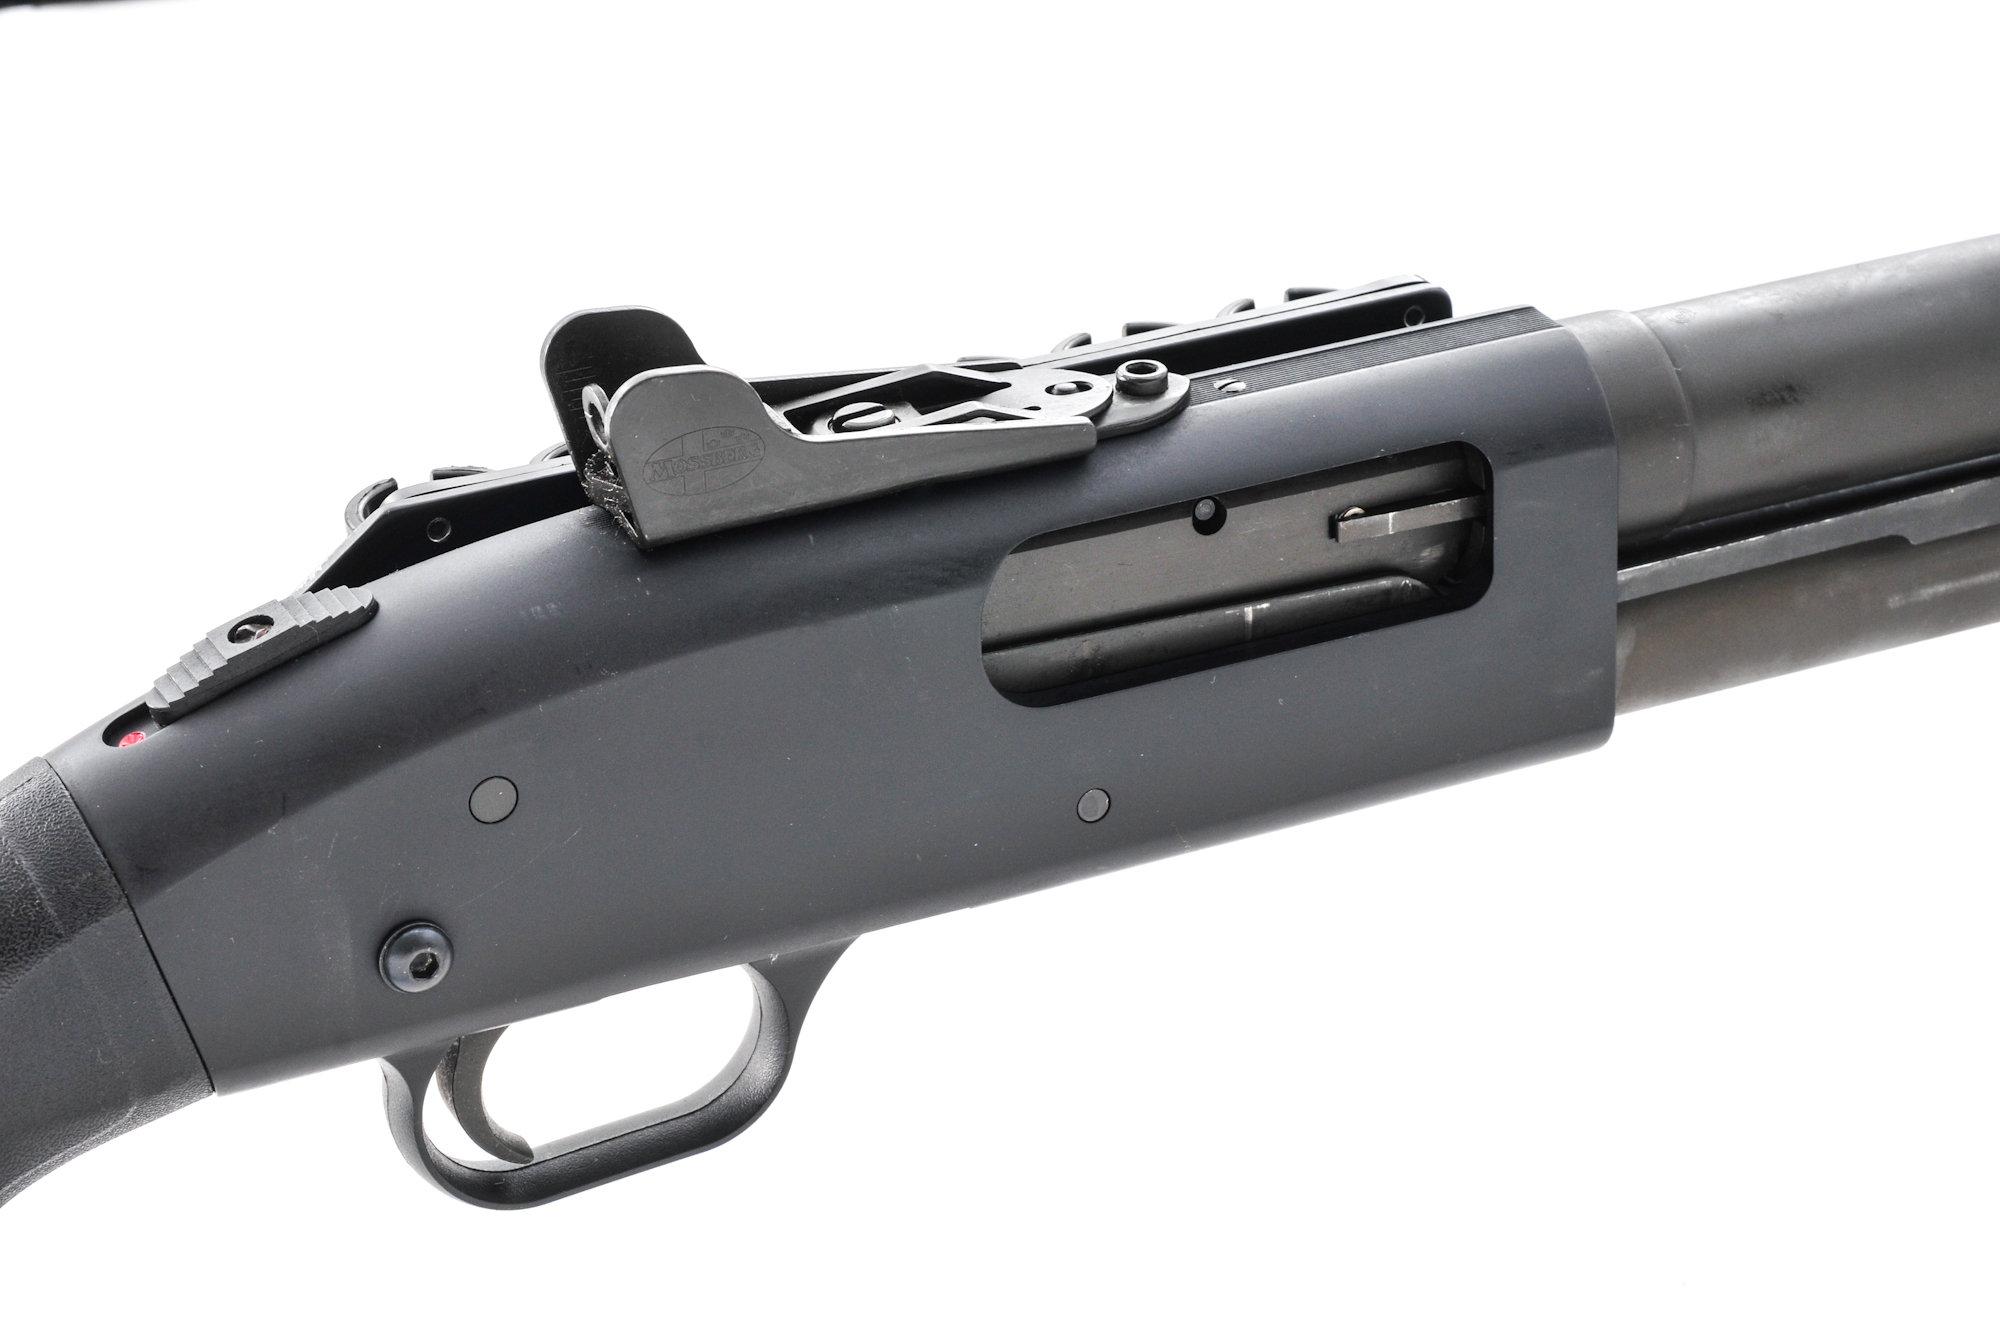 Tactical Mossberg Model 590 Pump Action Shotgun